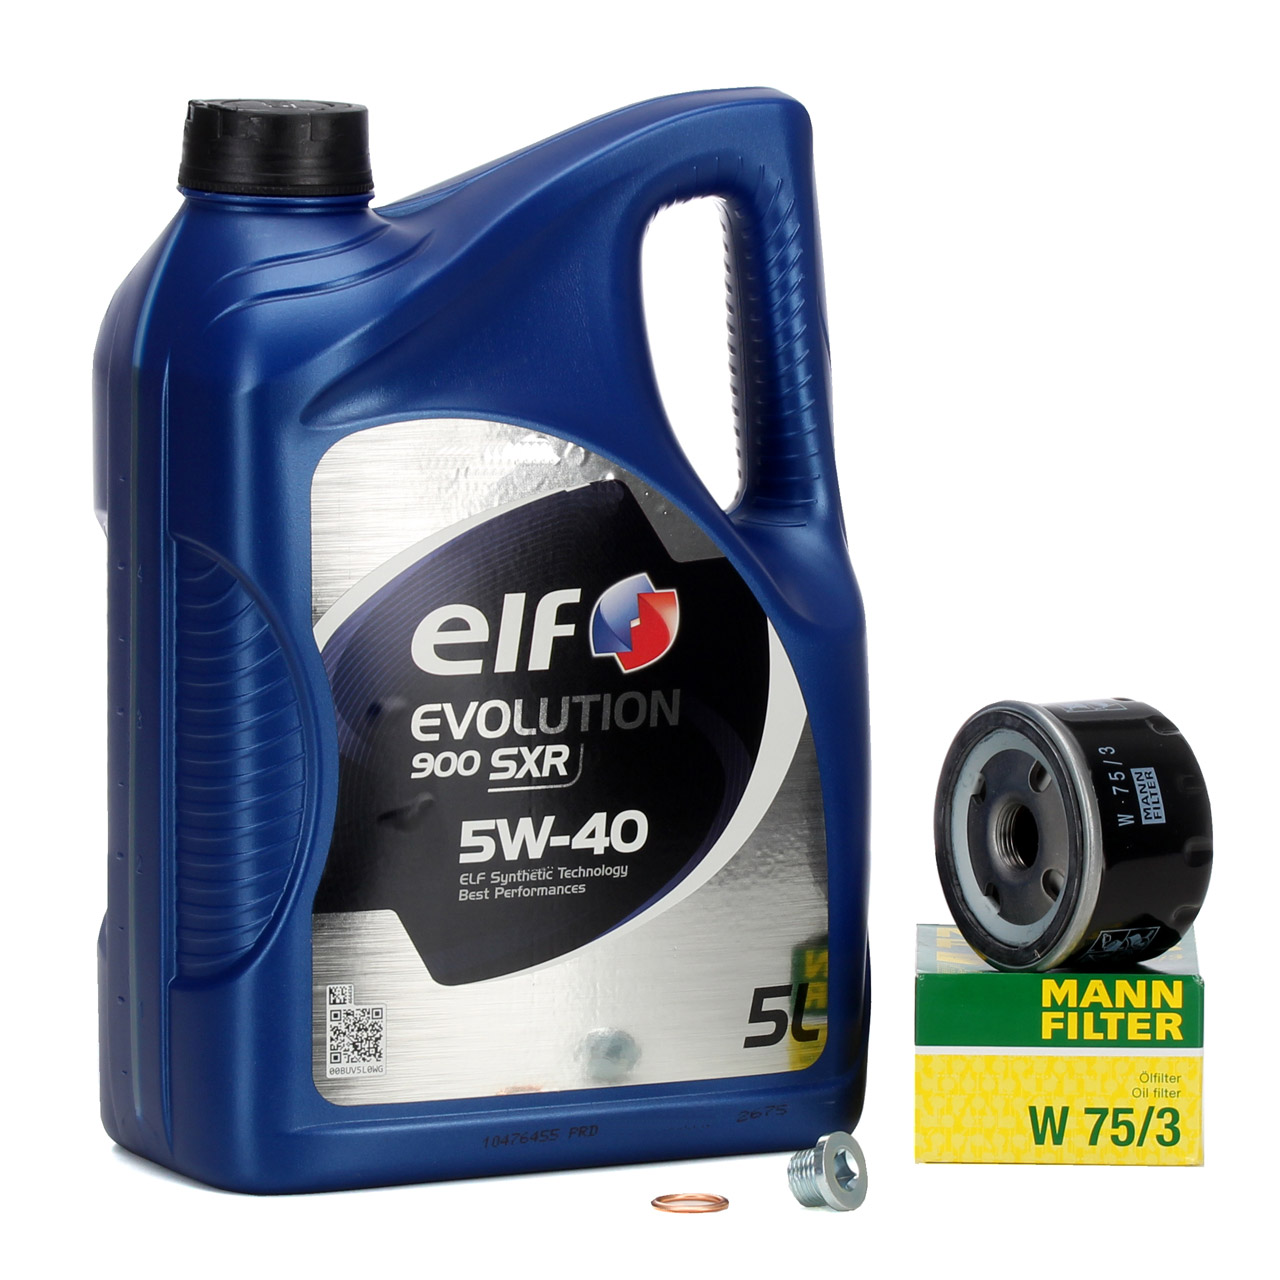 5L elf Evolution 900 SXR 5W-40 Motoröl + MANN Ölfilter für NISSAN OPEL RENAULT